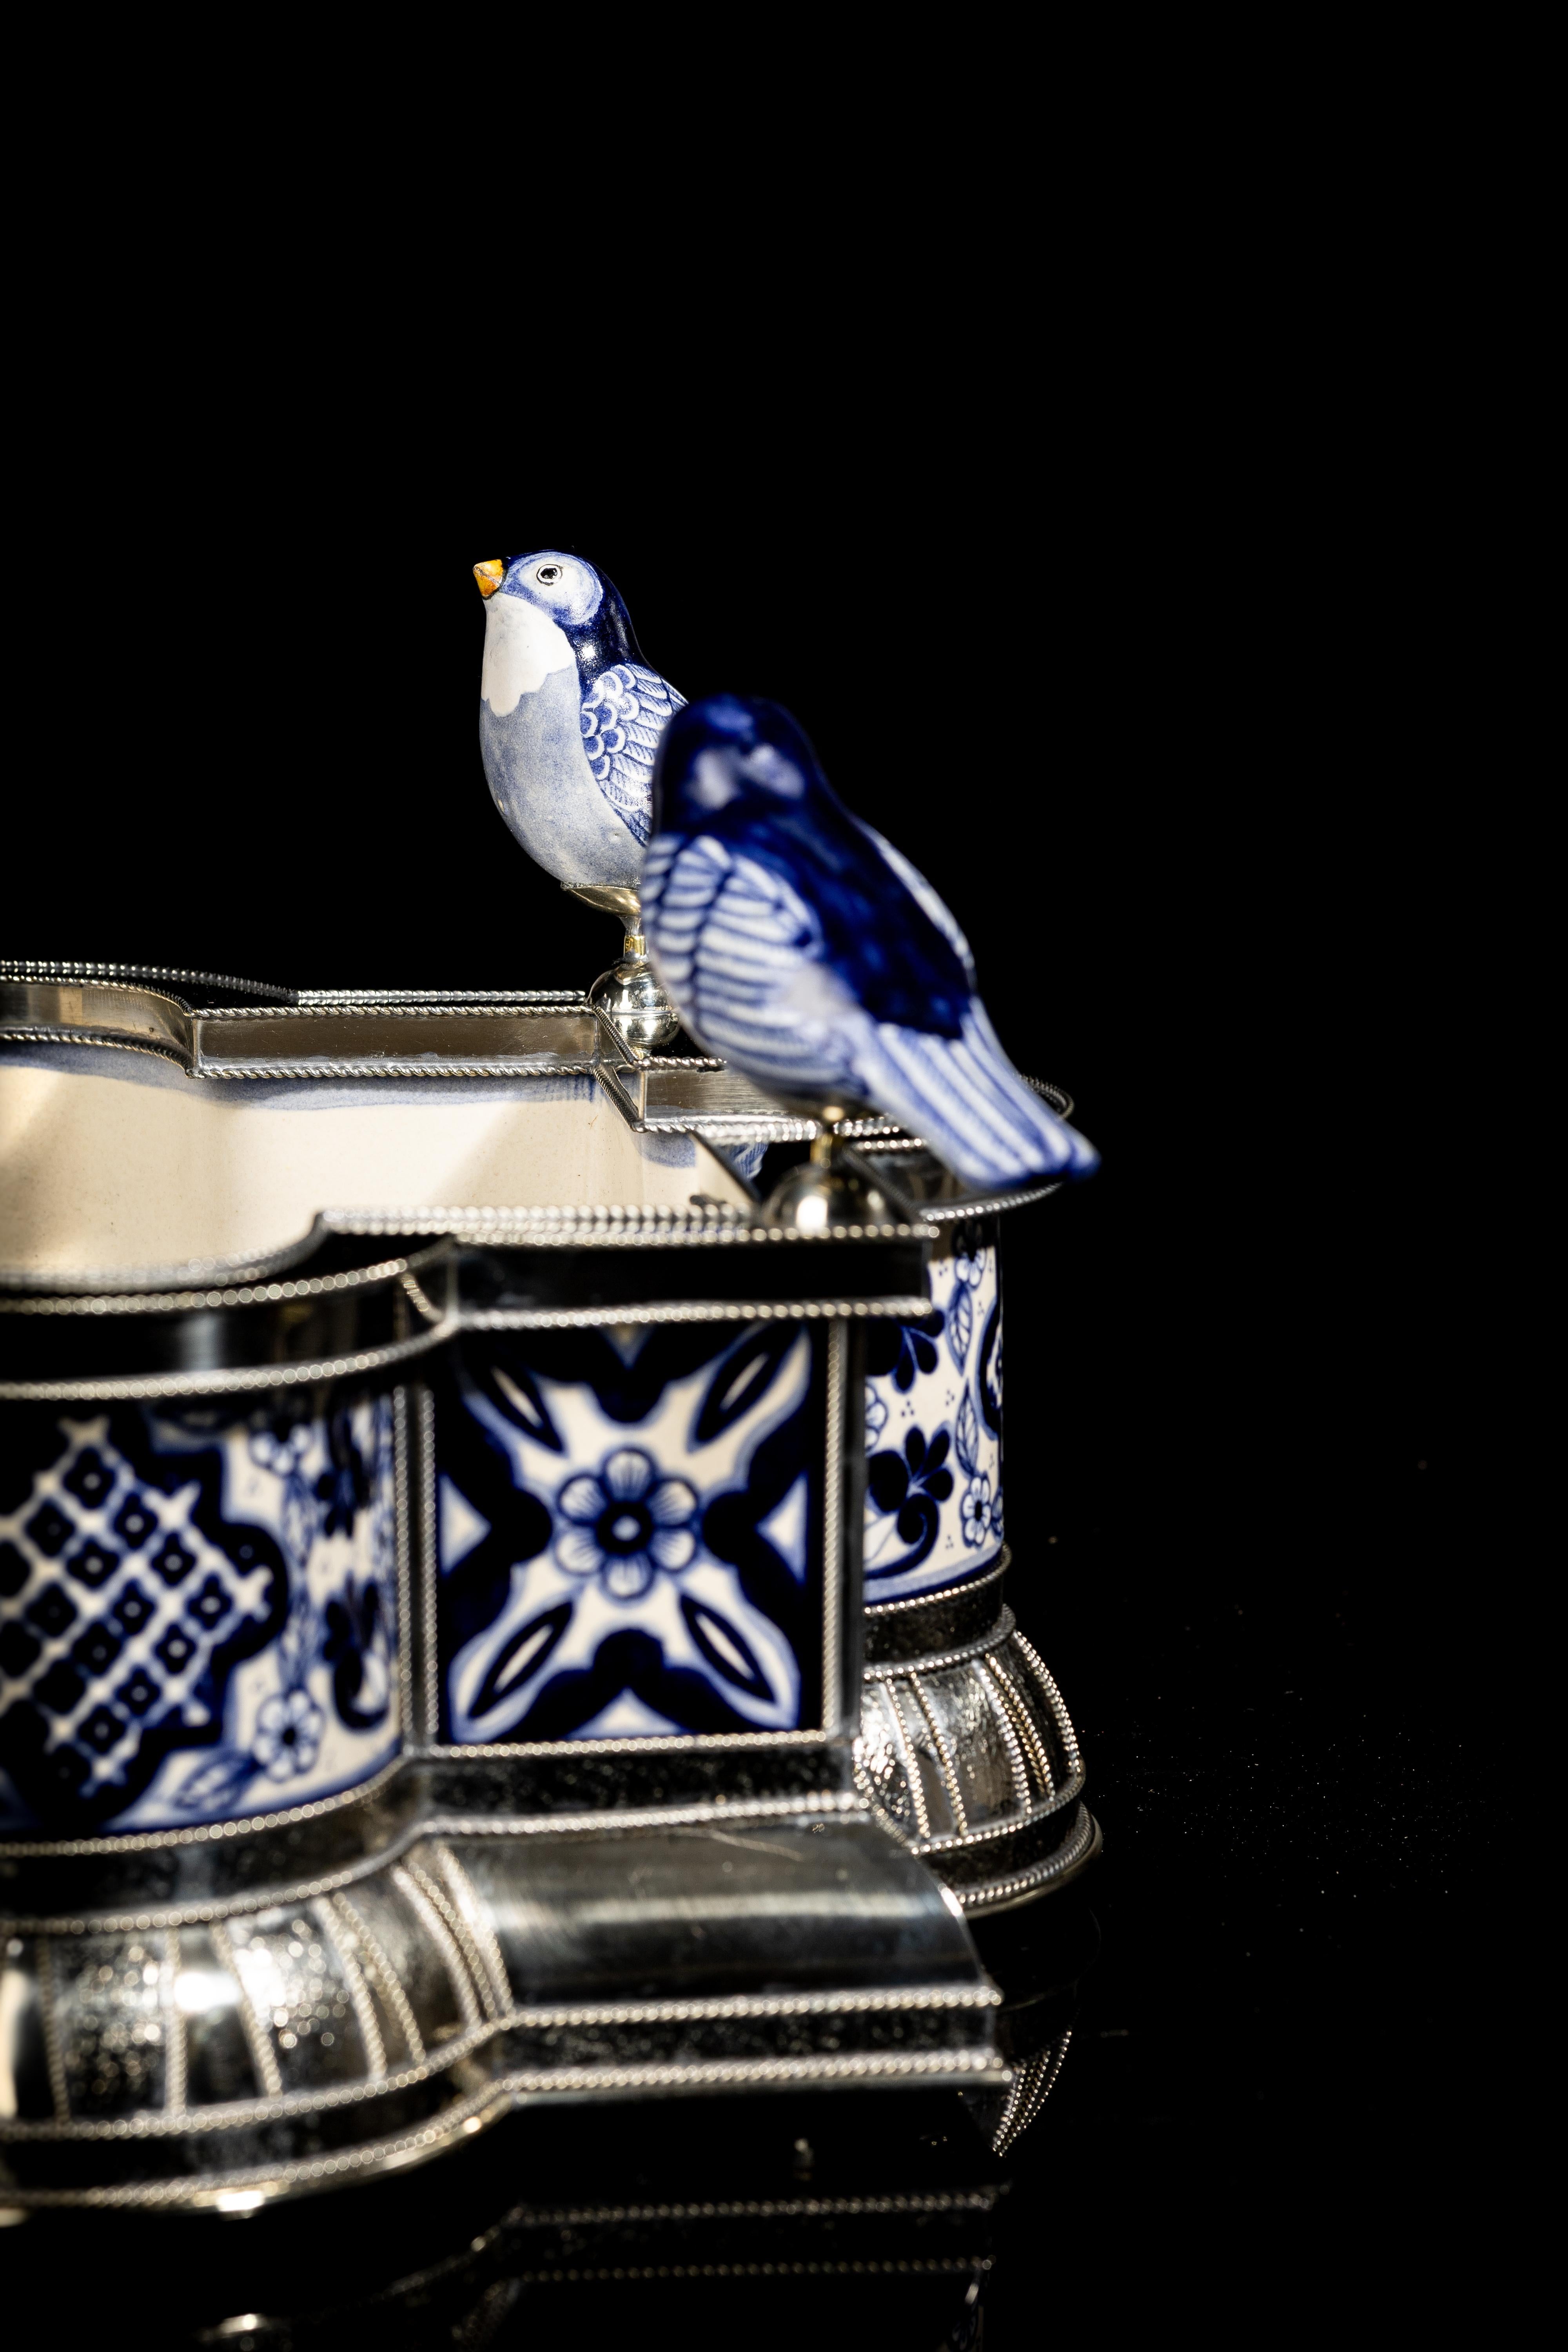 Contemporary Ceramic and White Metal 'Alpaca' Bird Bowl Centerpiece